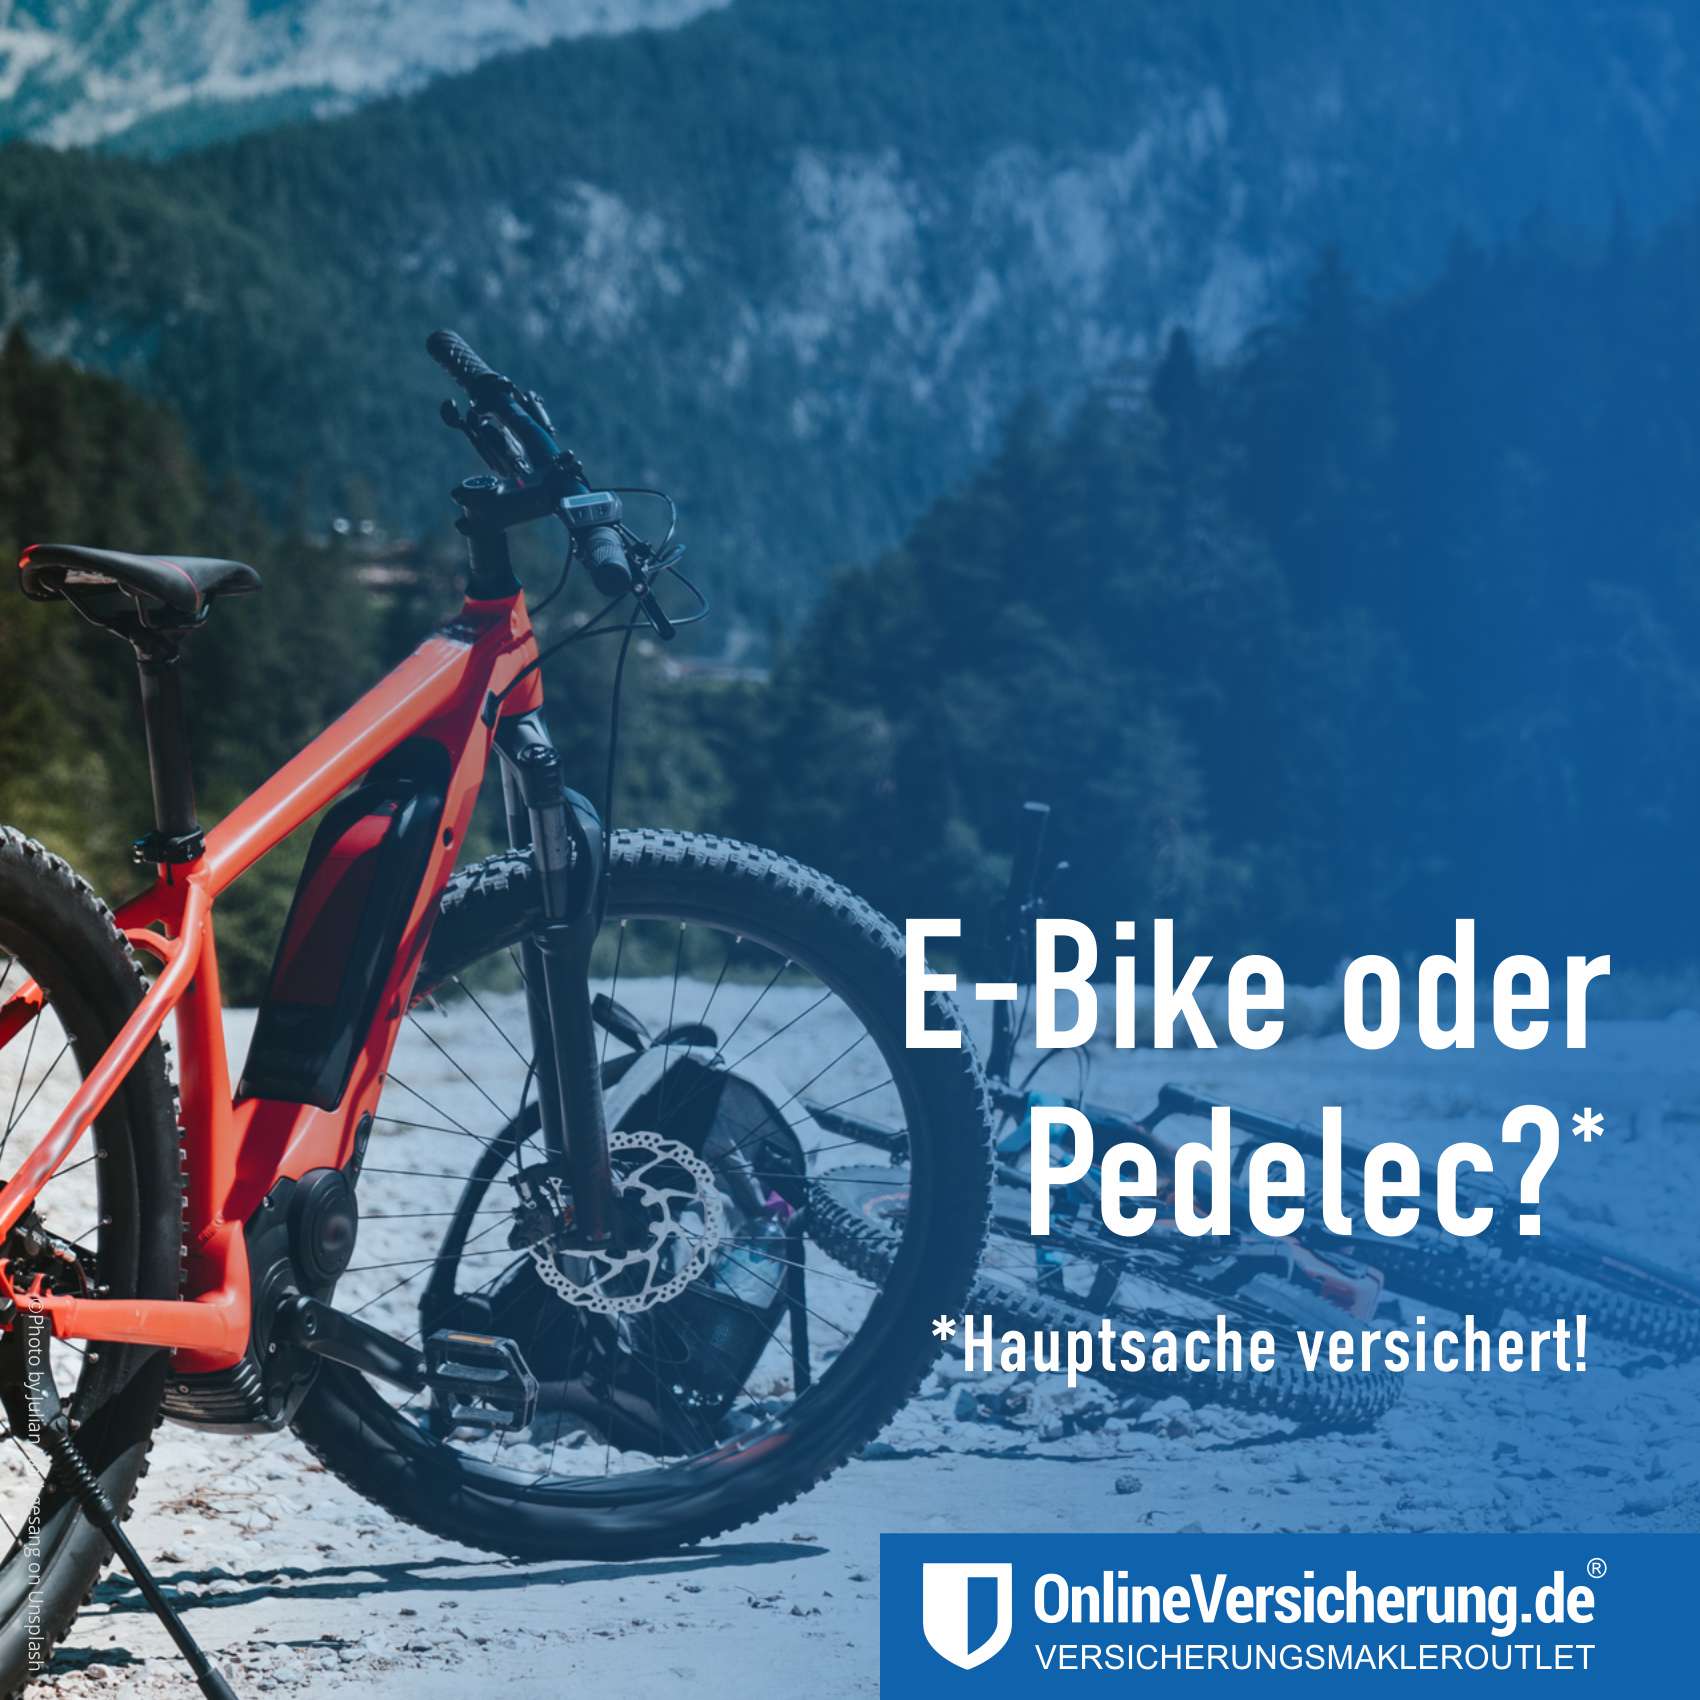 Unfallgefahr mit E-Bikes und Pedelecs!